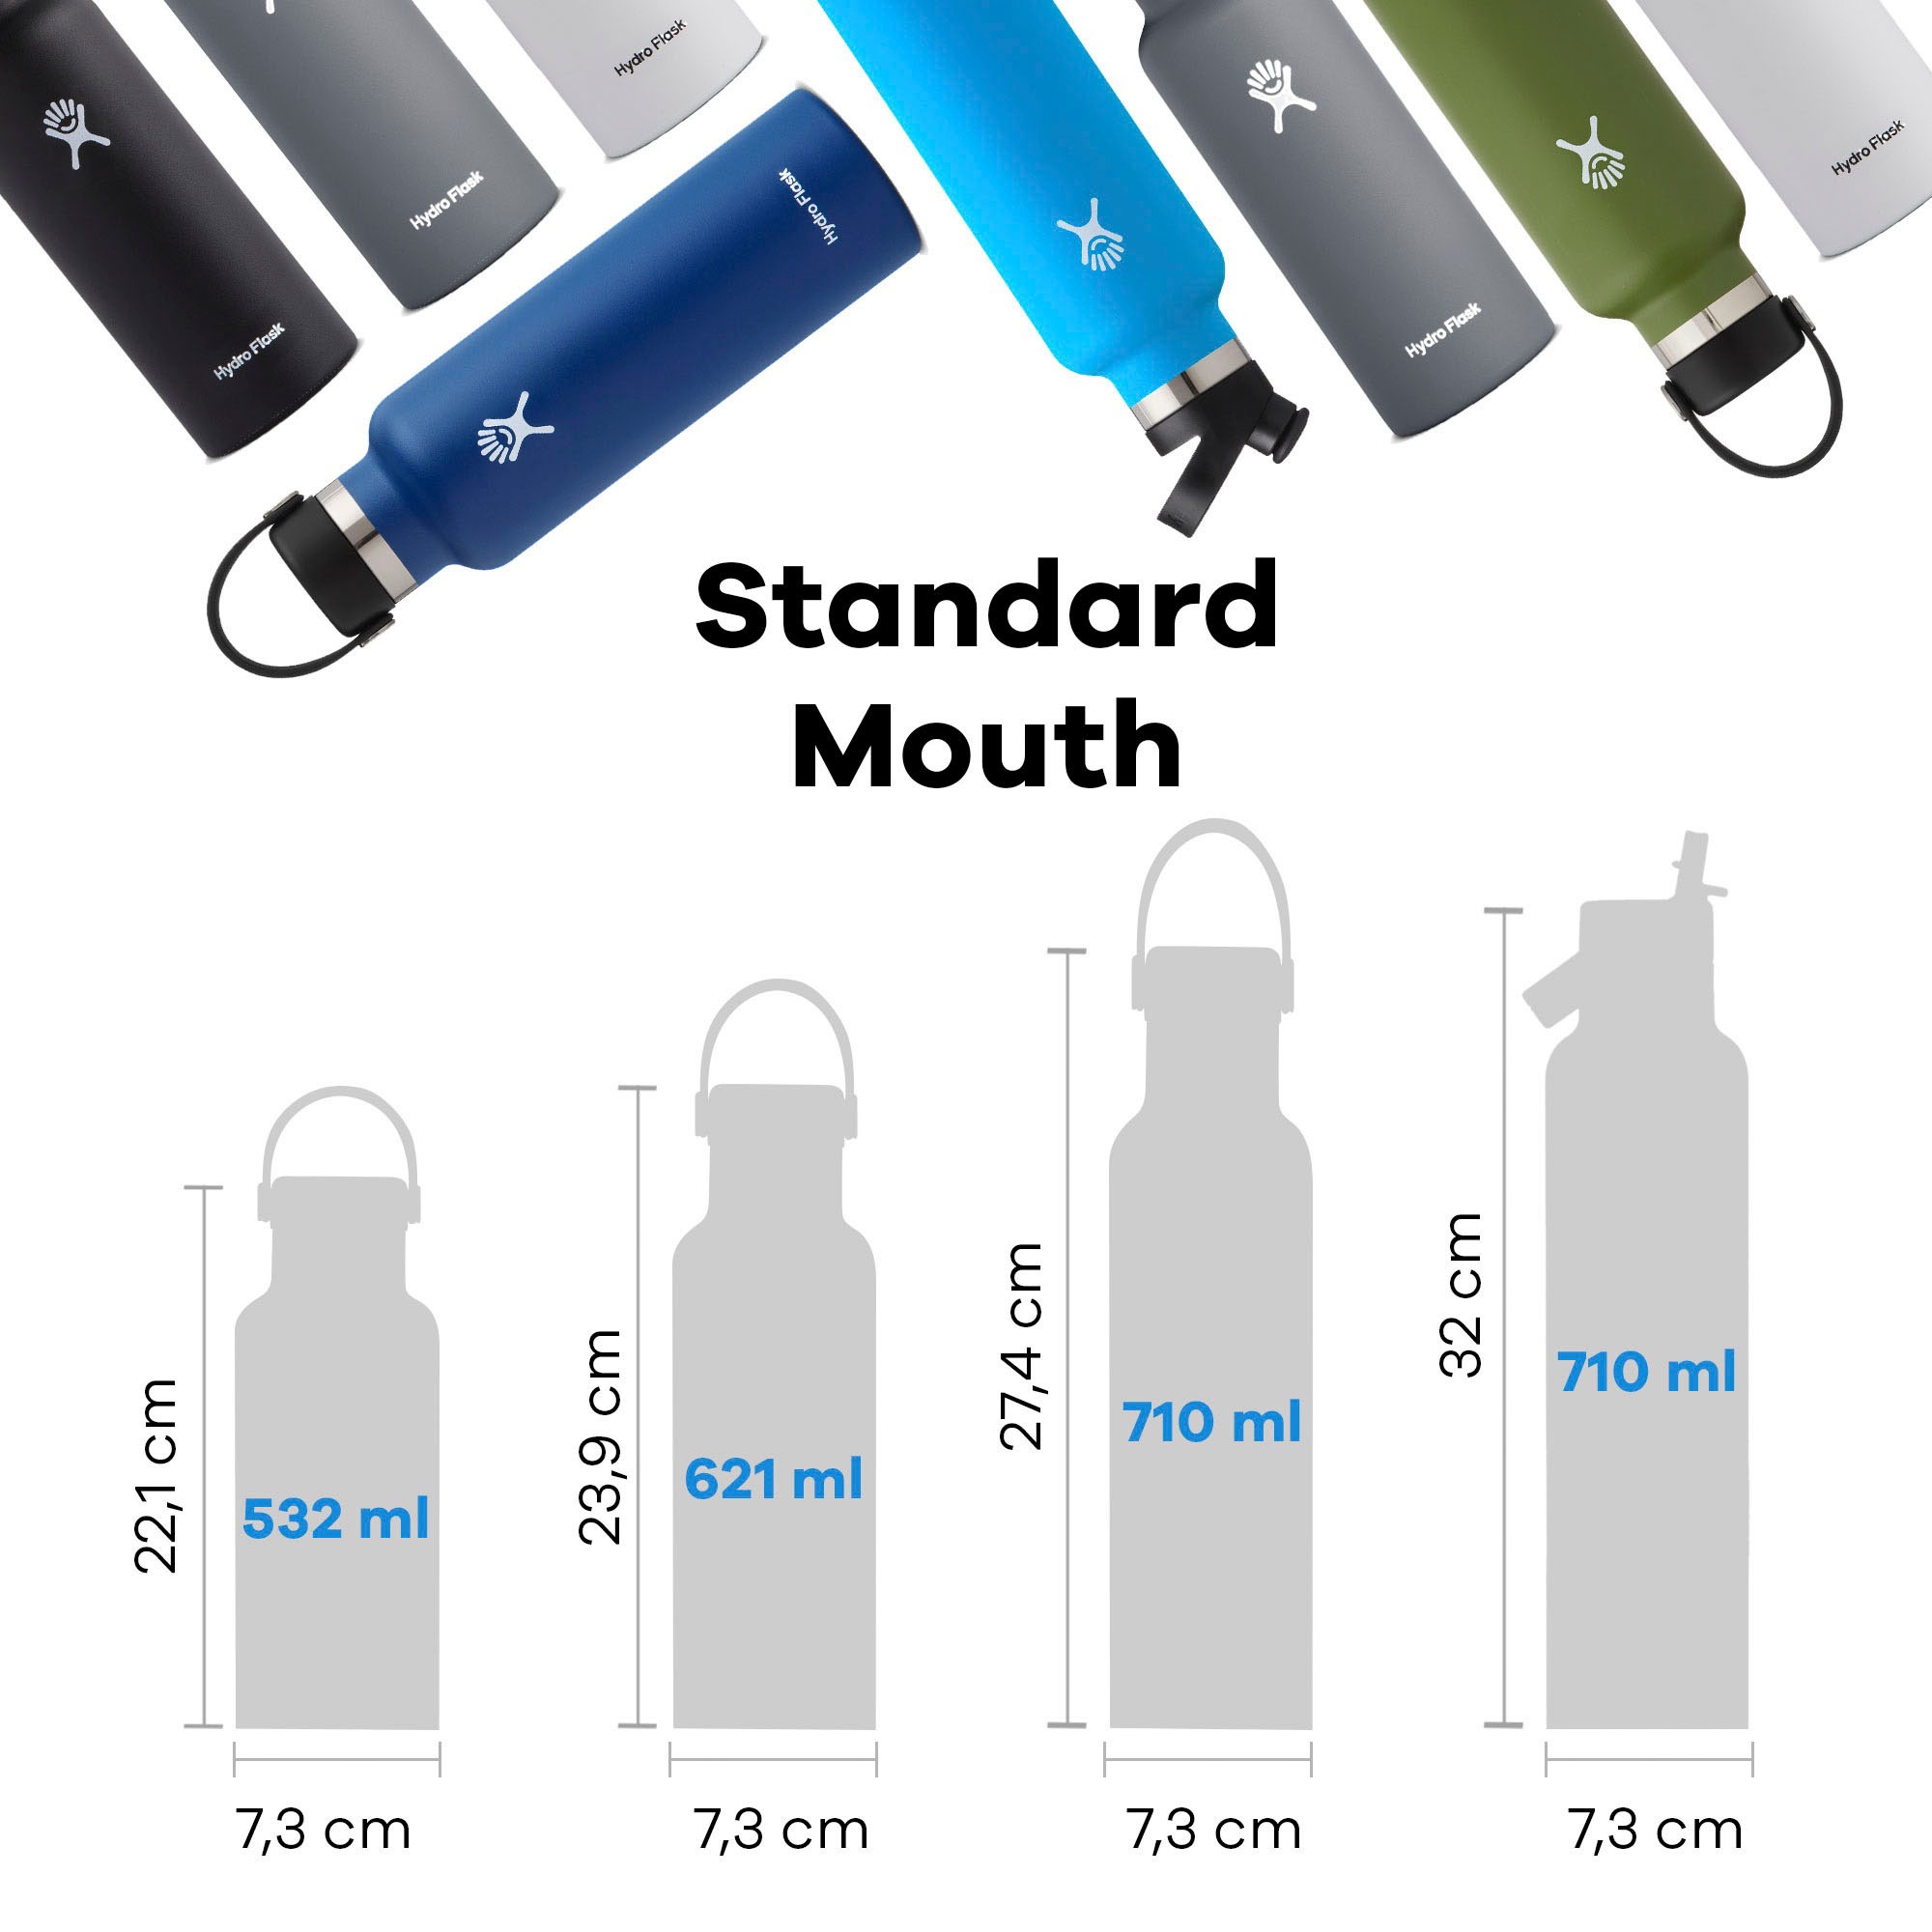 Hydro Flask Trinkflasche »STANDARD FLEX CAP«, (1 tlg.), TempShield™-Isolierung